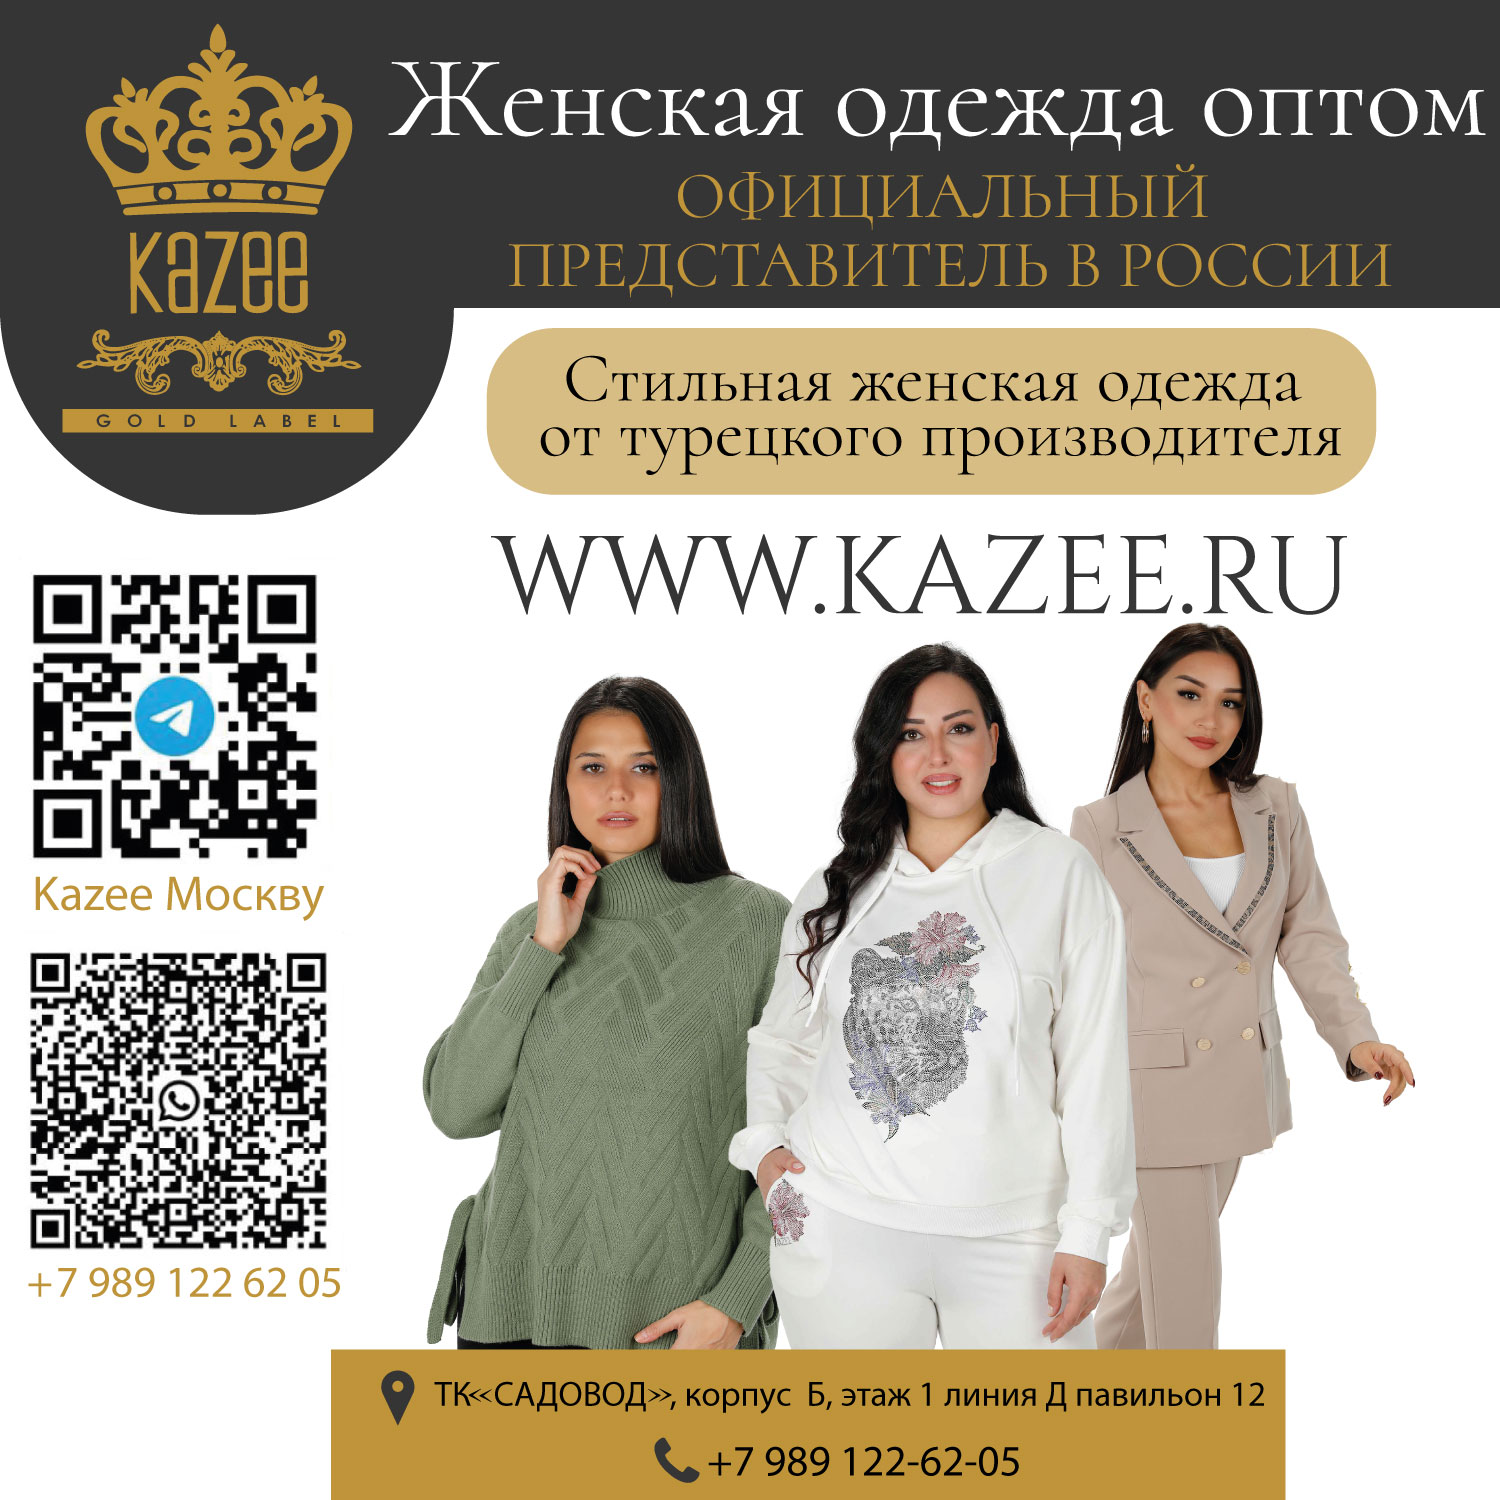 Représentant officiel du magasin KAZEE en Russie